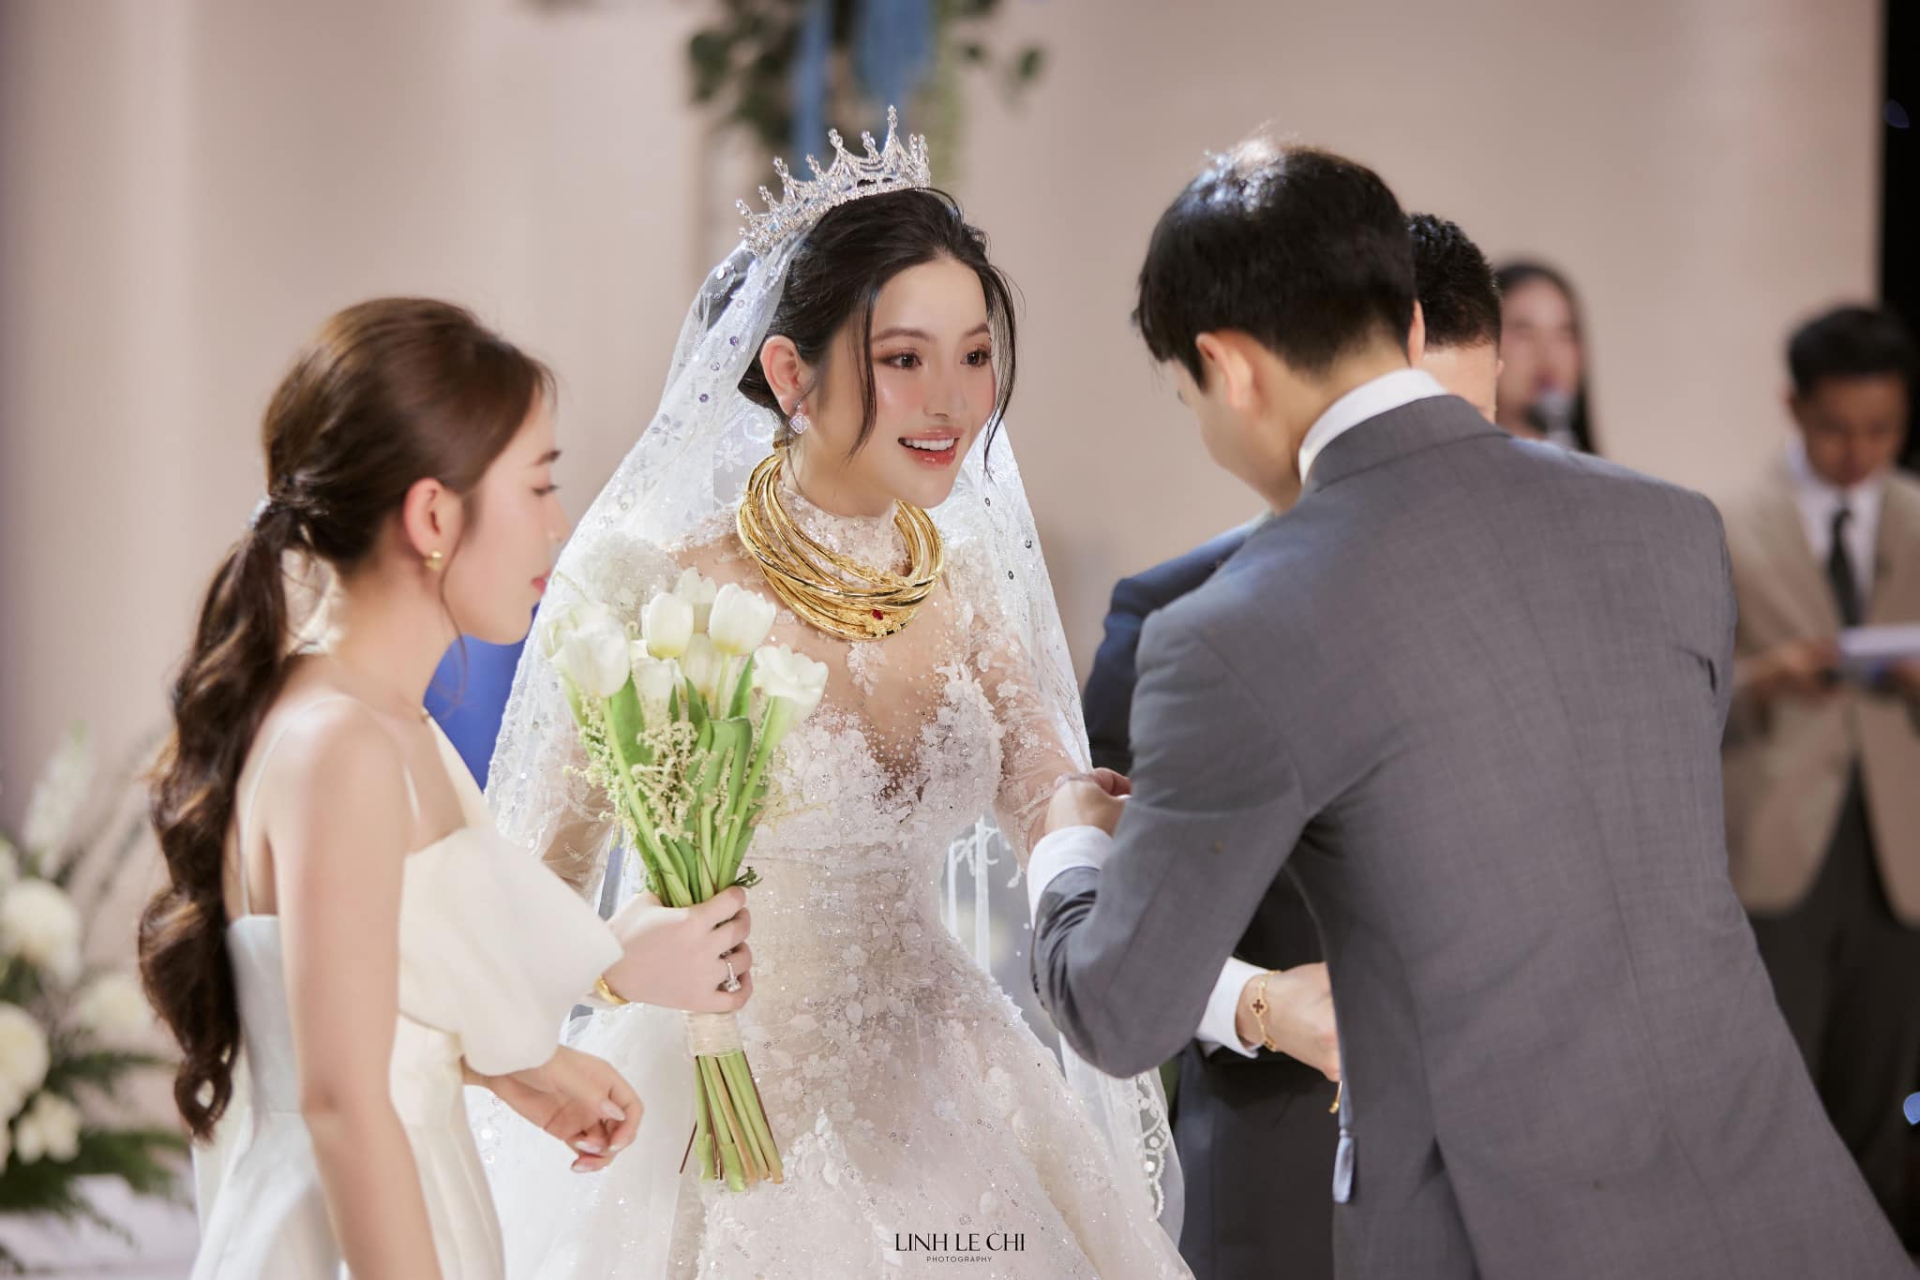 Chu Thanh Huyền 'flex' vàng cưới chất đống sau hôn lễ với Quang Hải, quá nhiều phải 'cầu cứu' chị dâu - ảnh 2